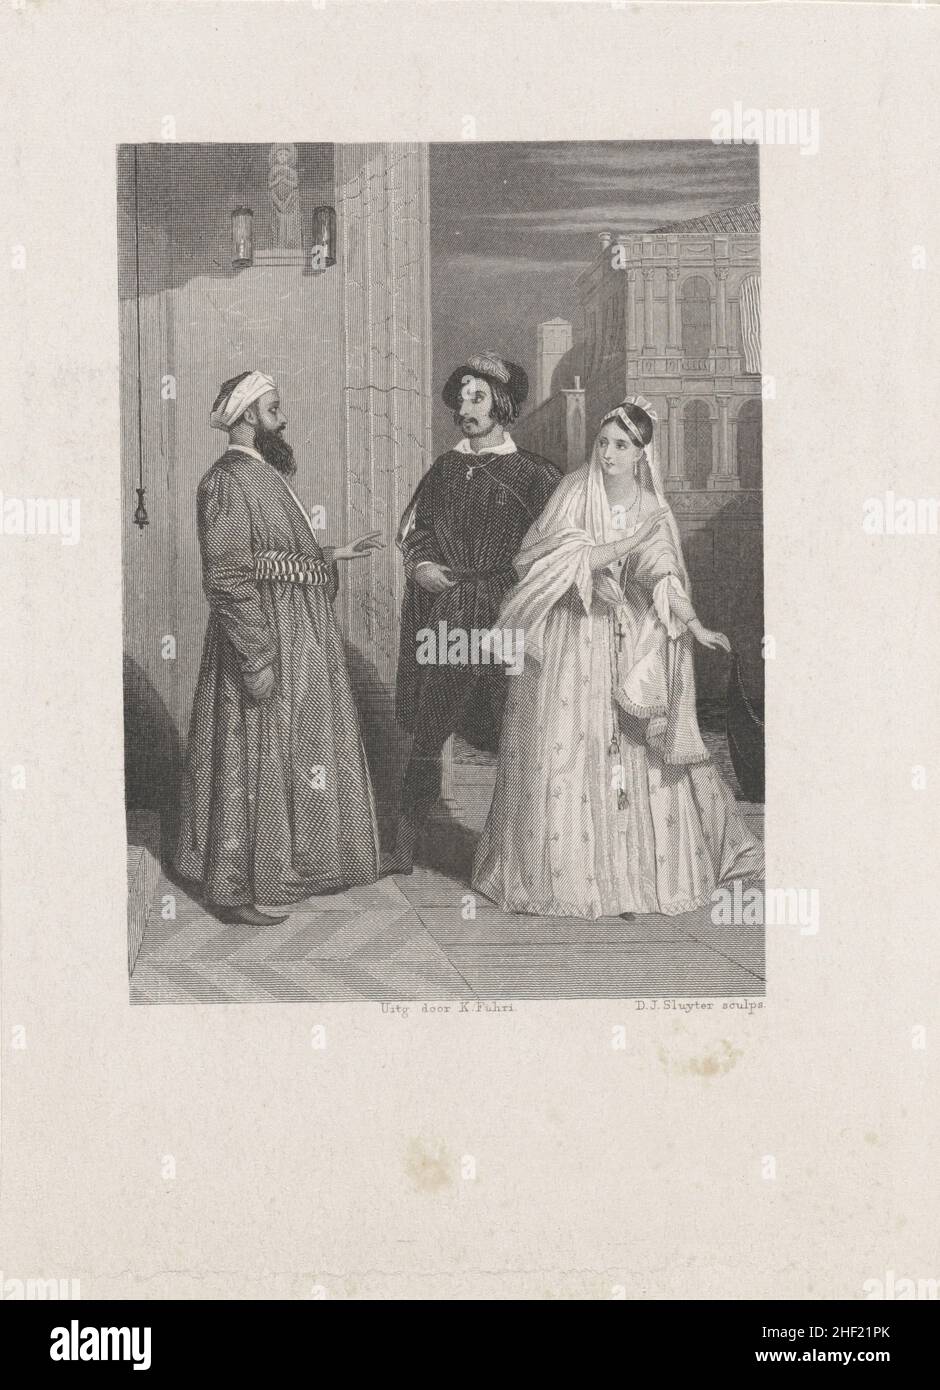 Paisaje urbano con árabe y hombre con mujer, Dirk Jurriaan Sluyter, 1849 Foto de stock